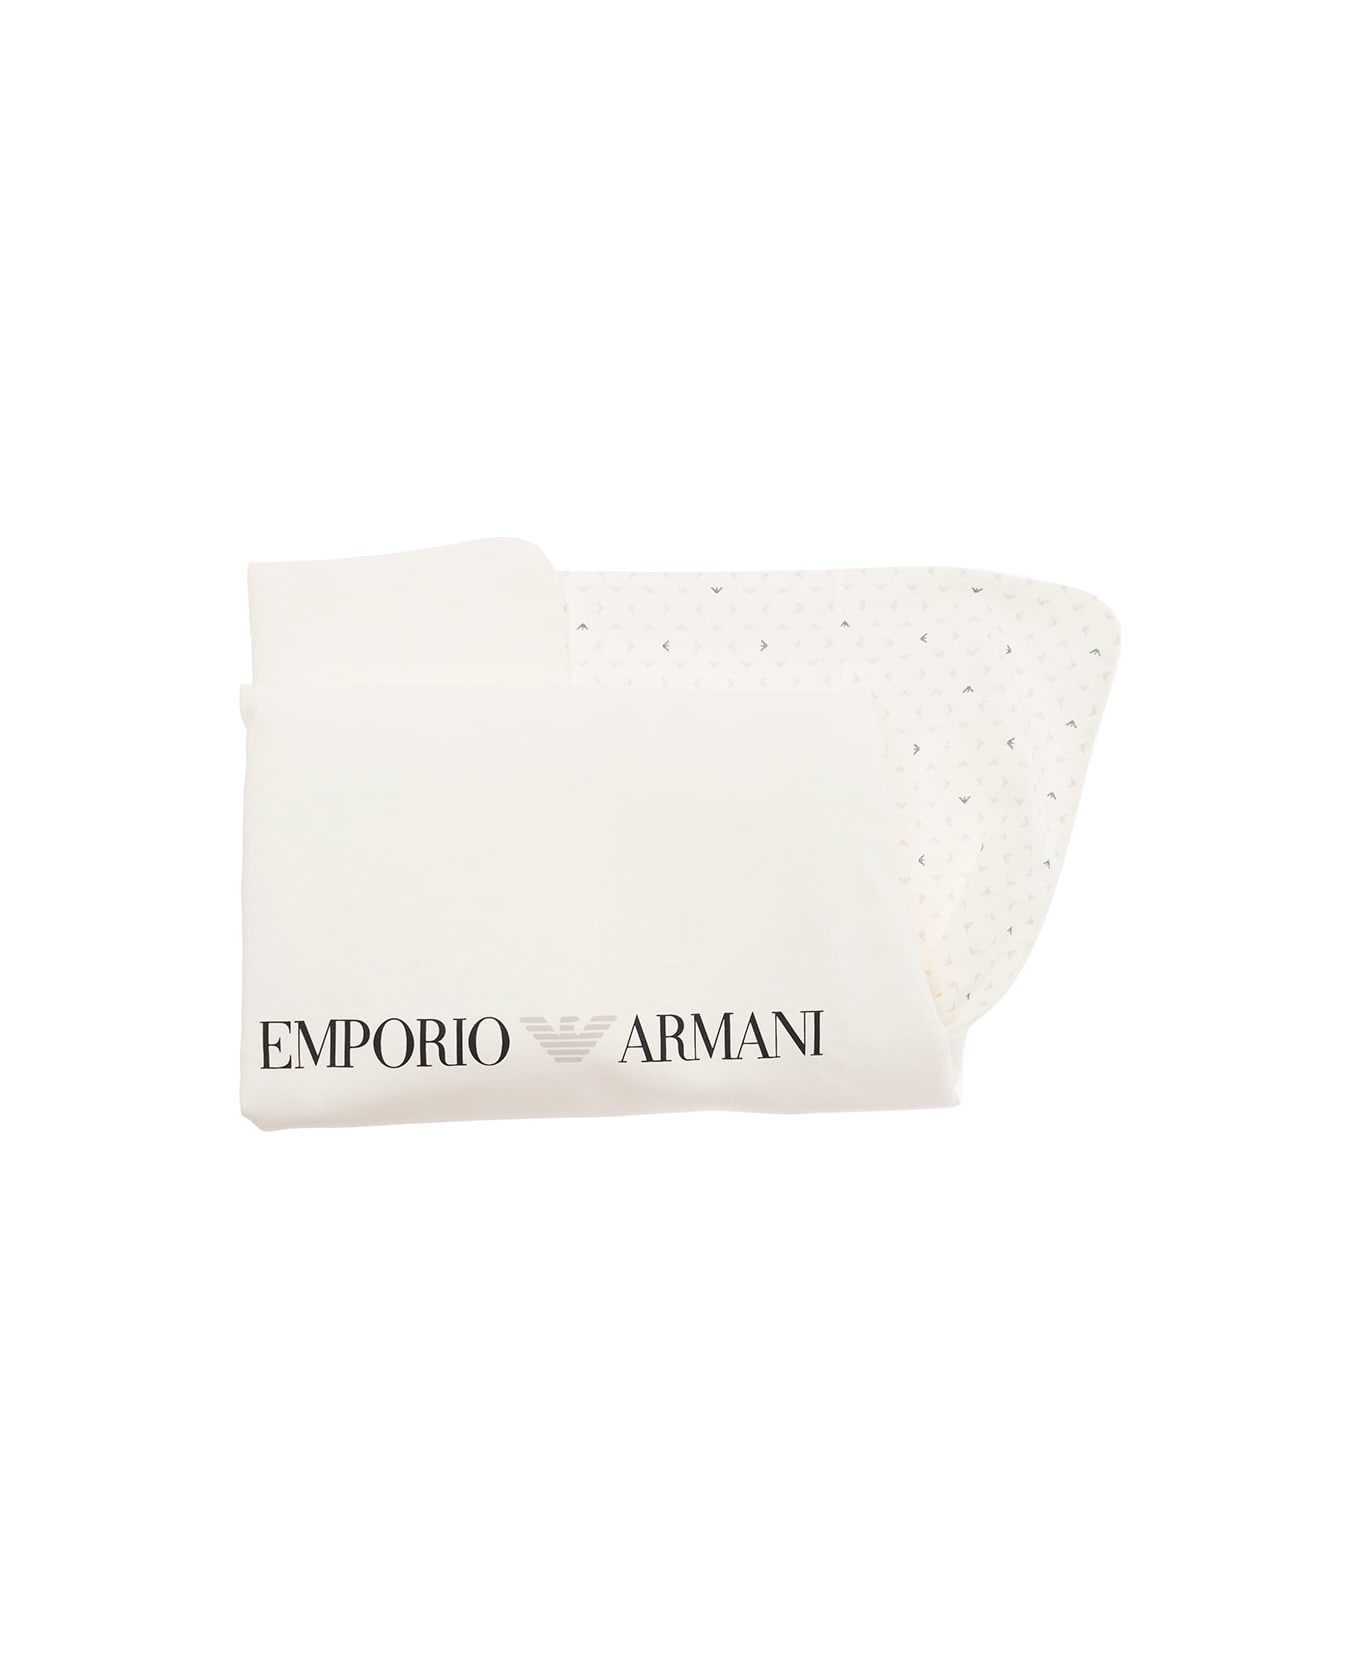 Emporio Armani White Blanket With Contrasting Logo Detail In Cotton - White